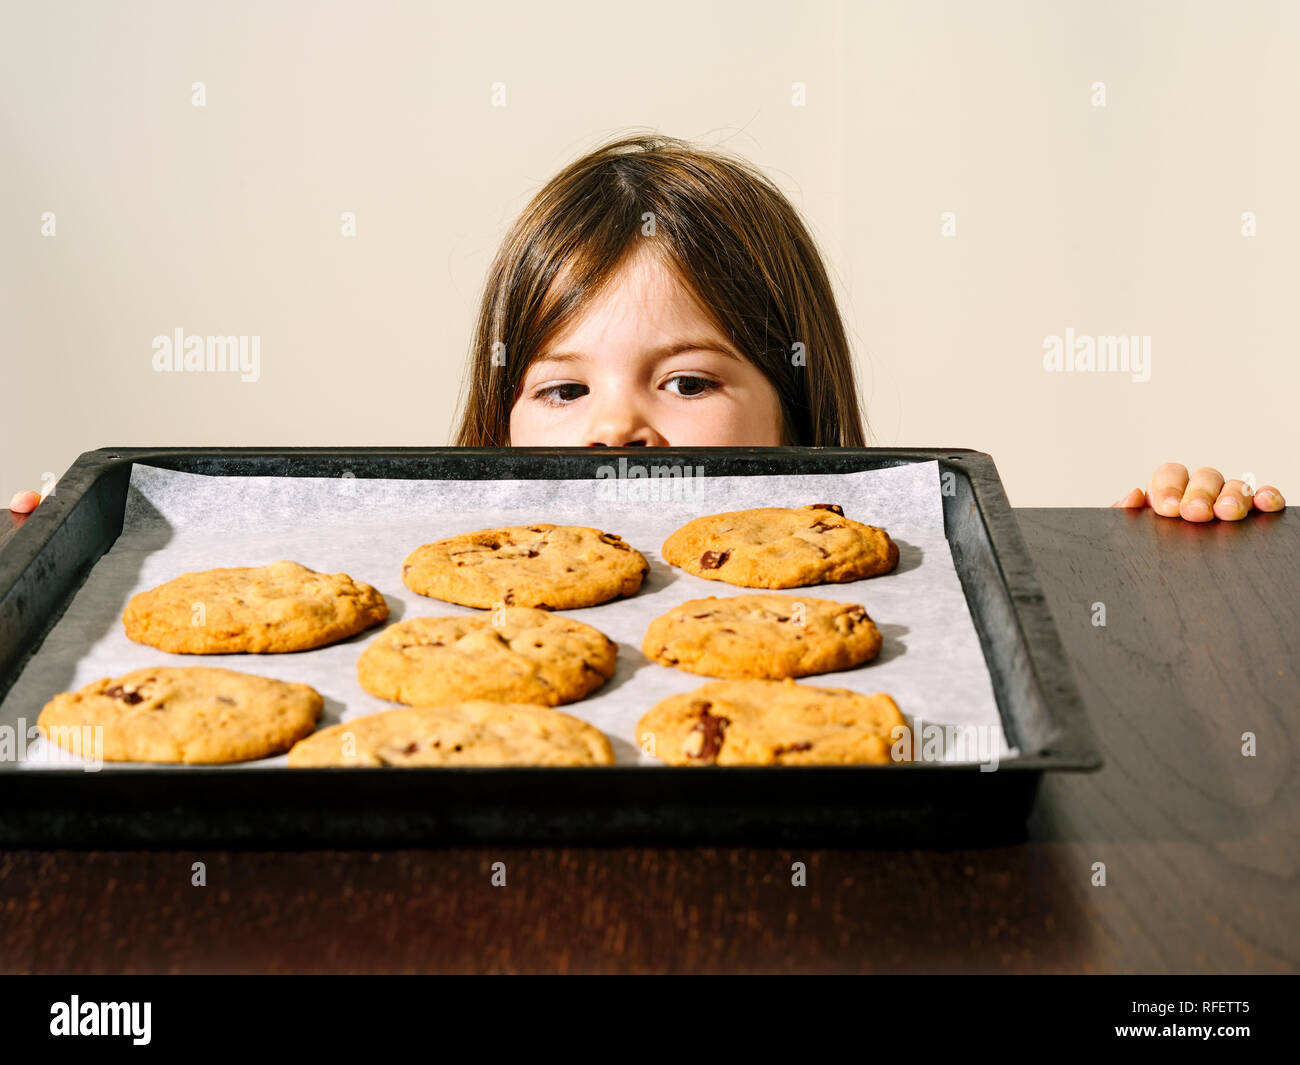 Foto di una ragazza giovane fissando un vassoio di calda i biscotti al cioccolato appena fuori dal forno. Foto Stock